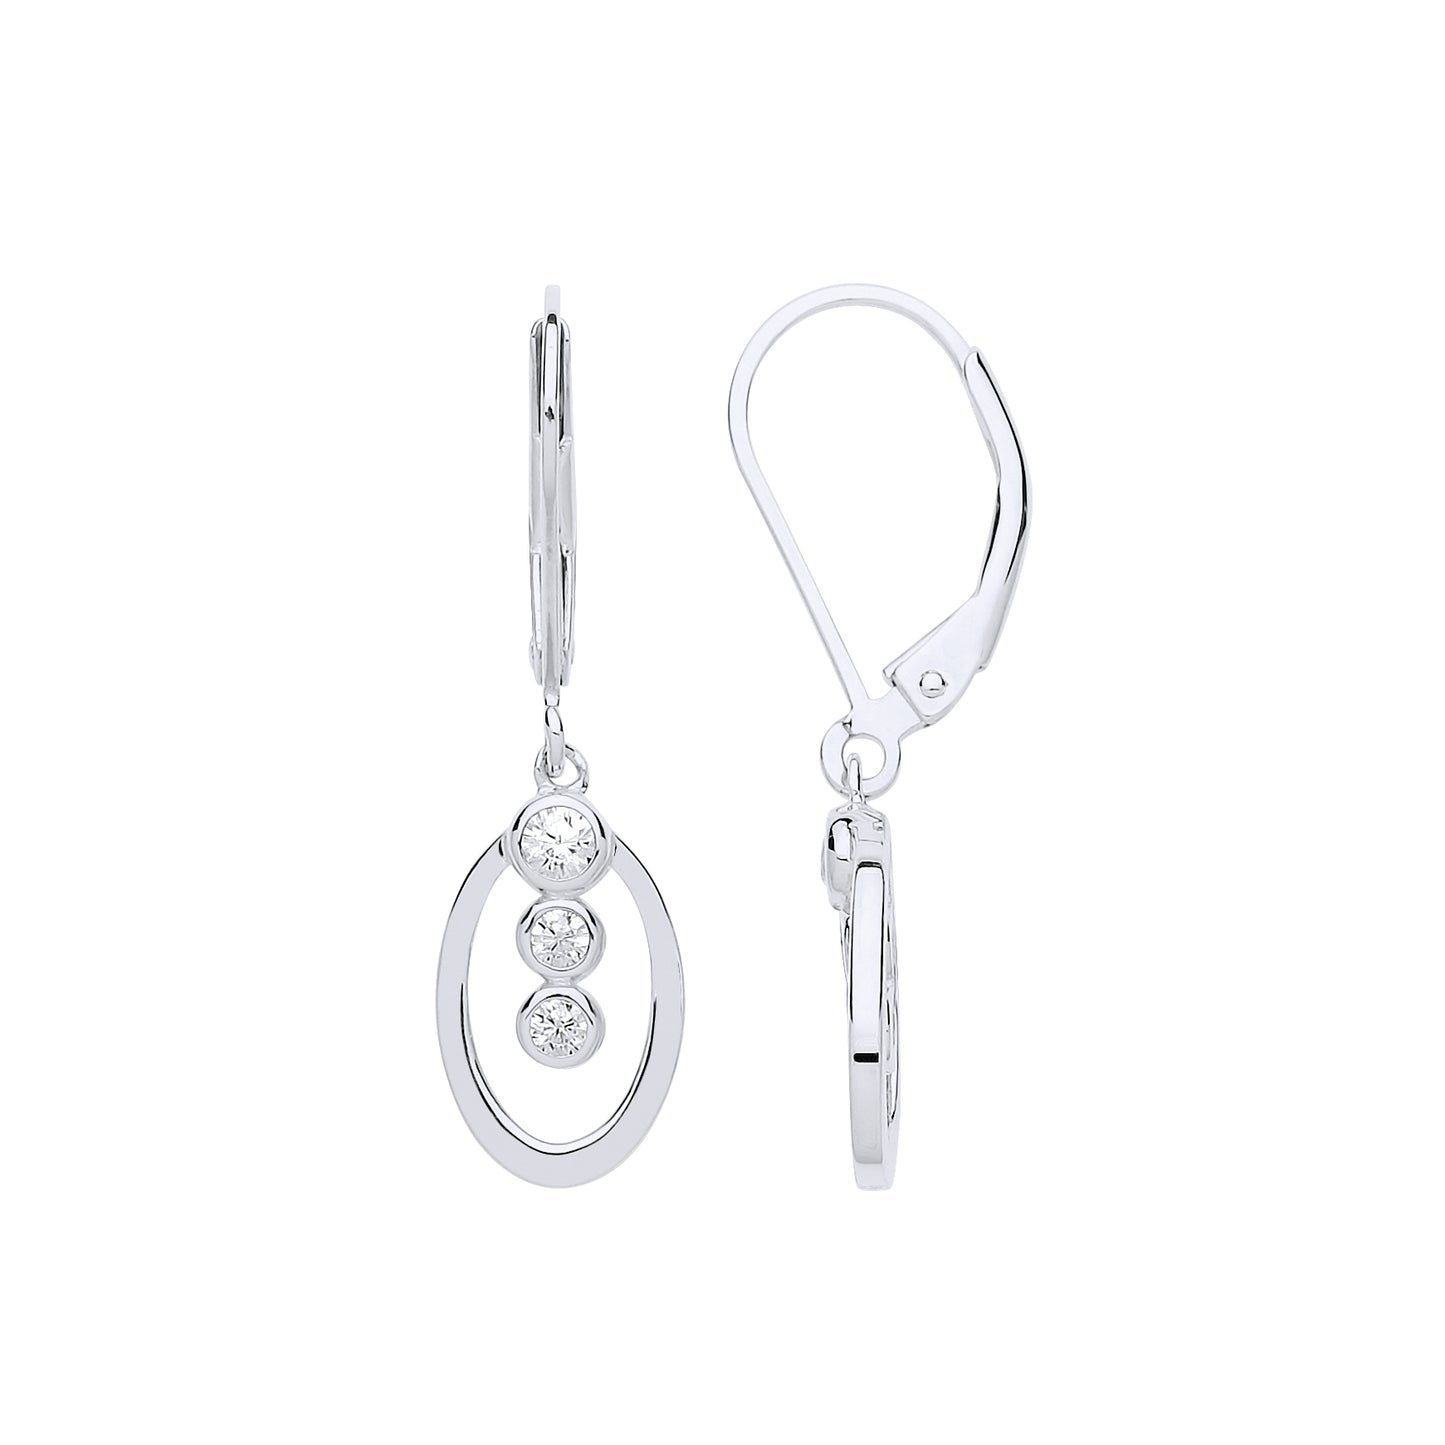 Silver  CZ Trilogy Oval Hoop Drop Earrings - GVE688